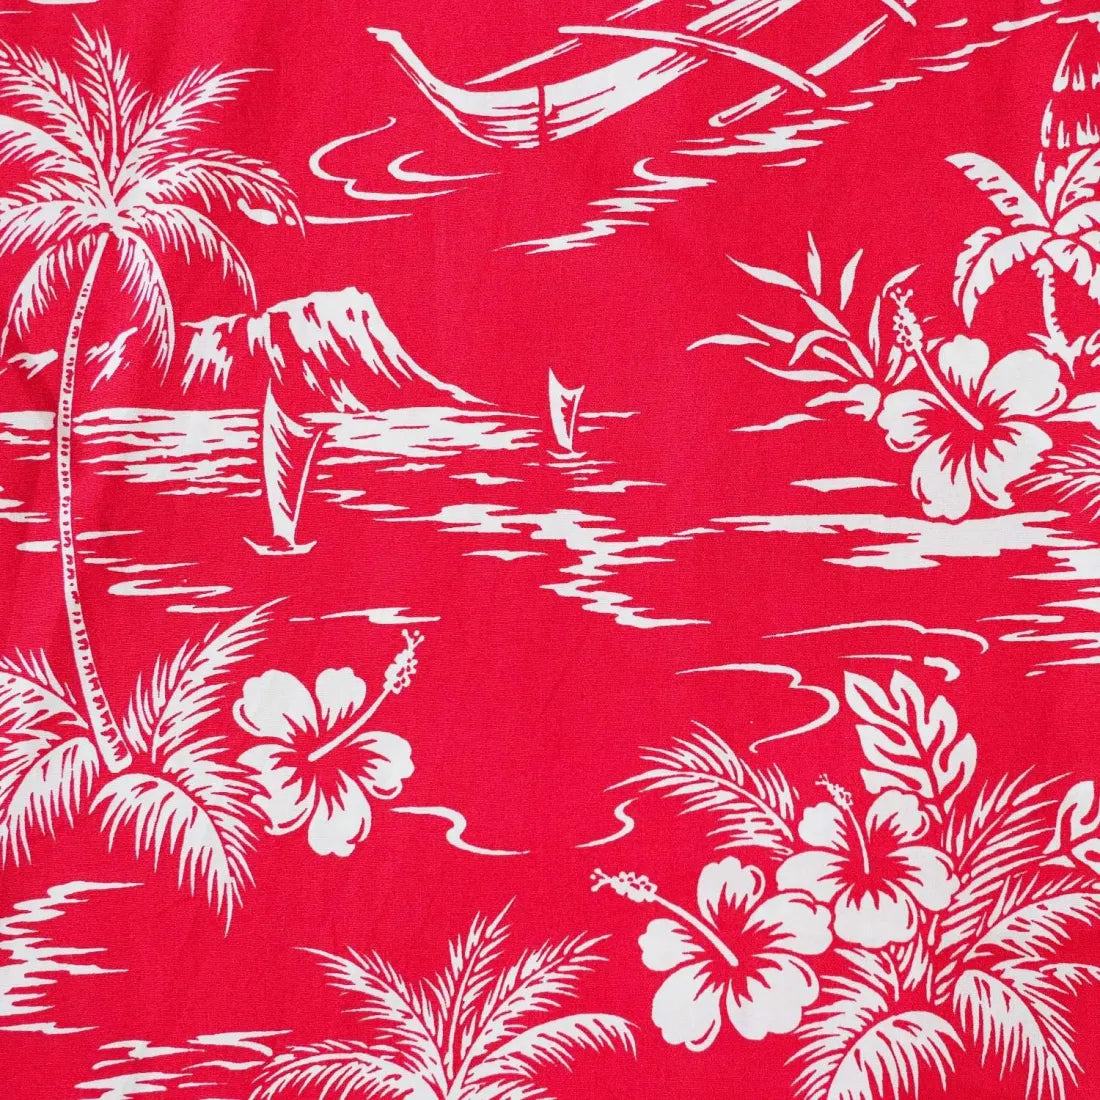 Island Red Hawaiian Cotton Shirt - Made In Hawaii